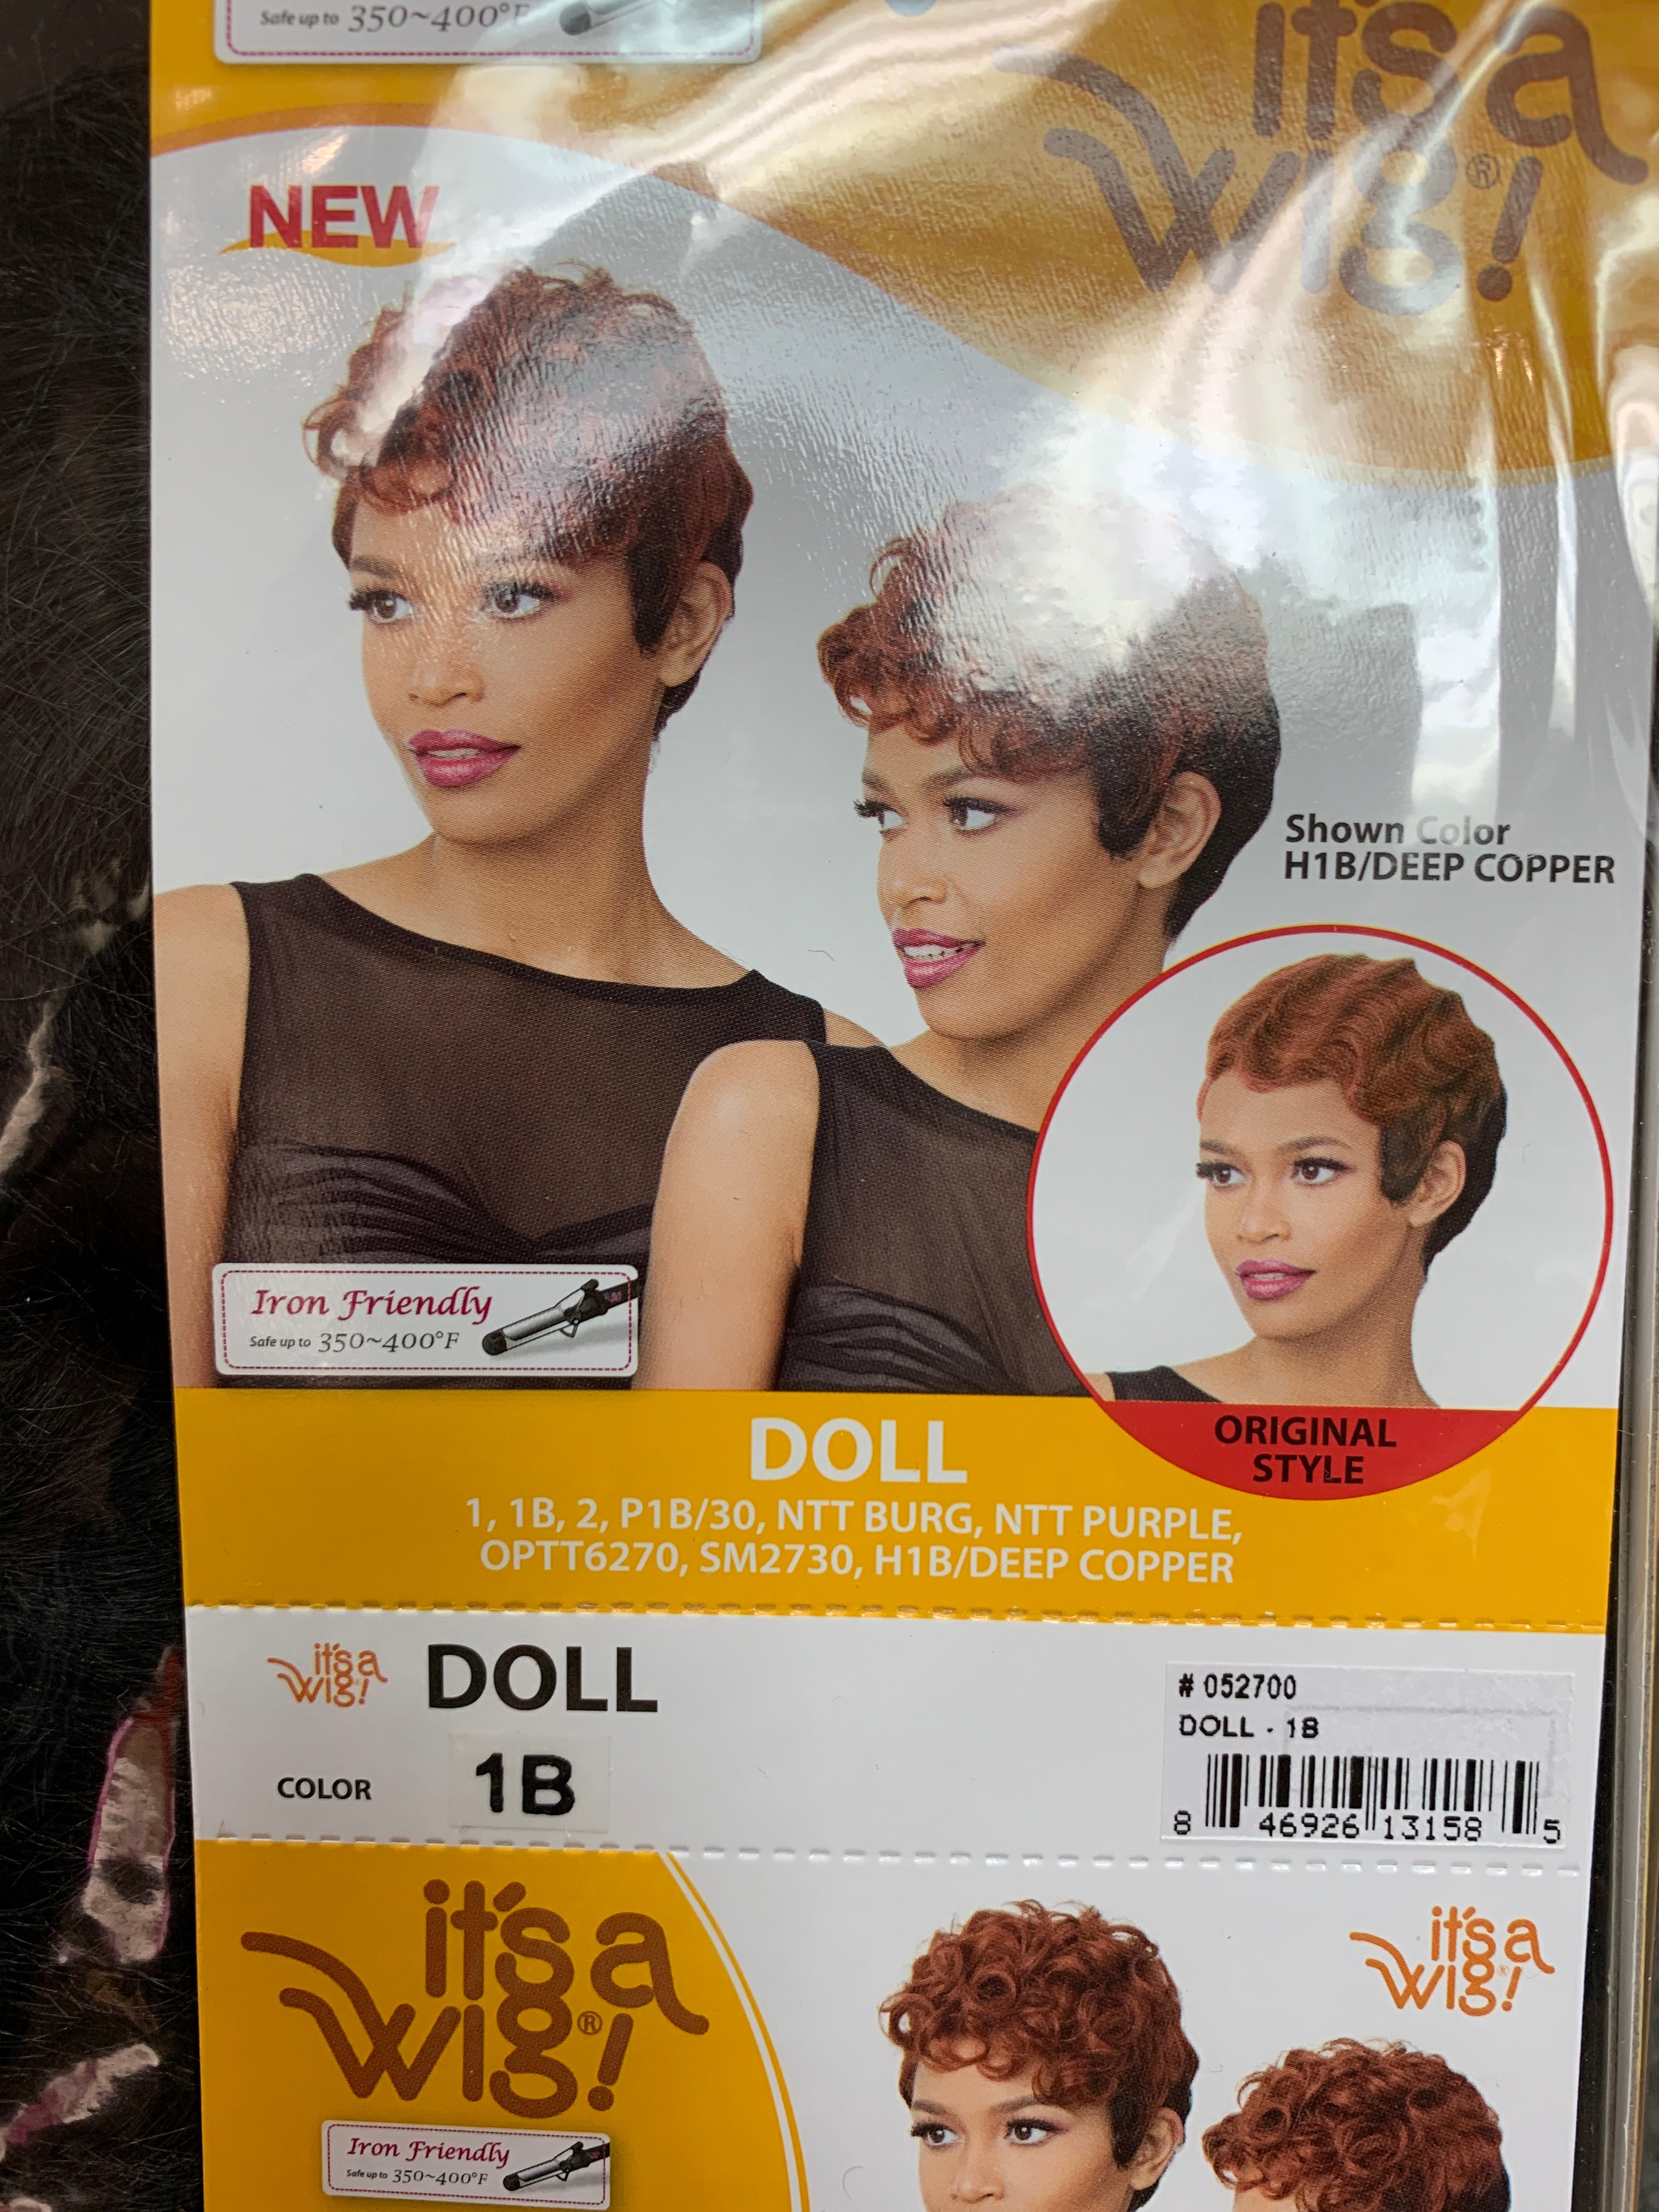 It’s a wig Doll